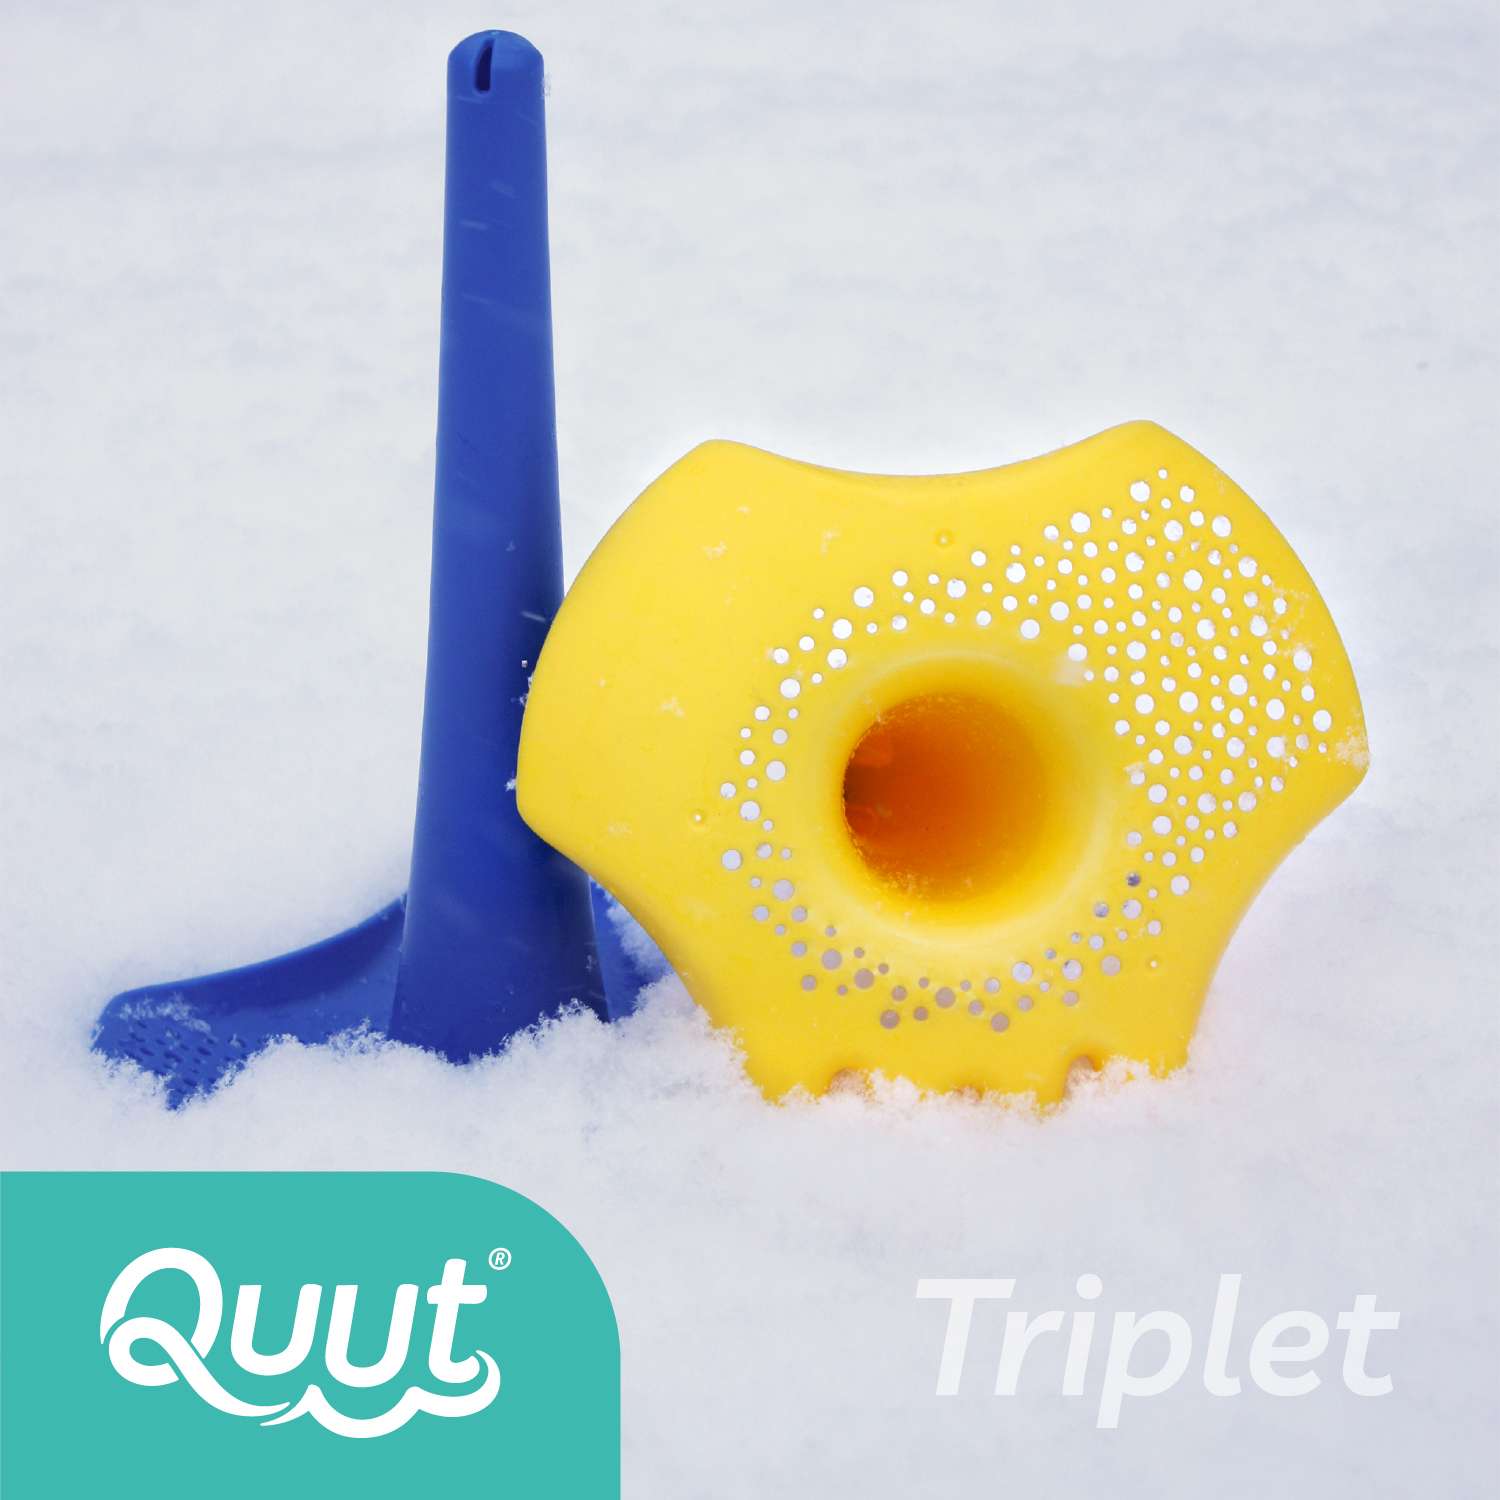 Игрушка для песка и снега QUUT многофункциональная Triplet Зелёная лагуна - фото 6